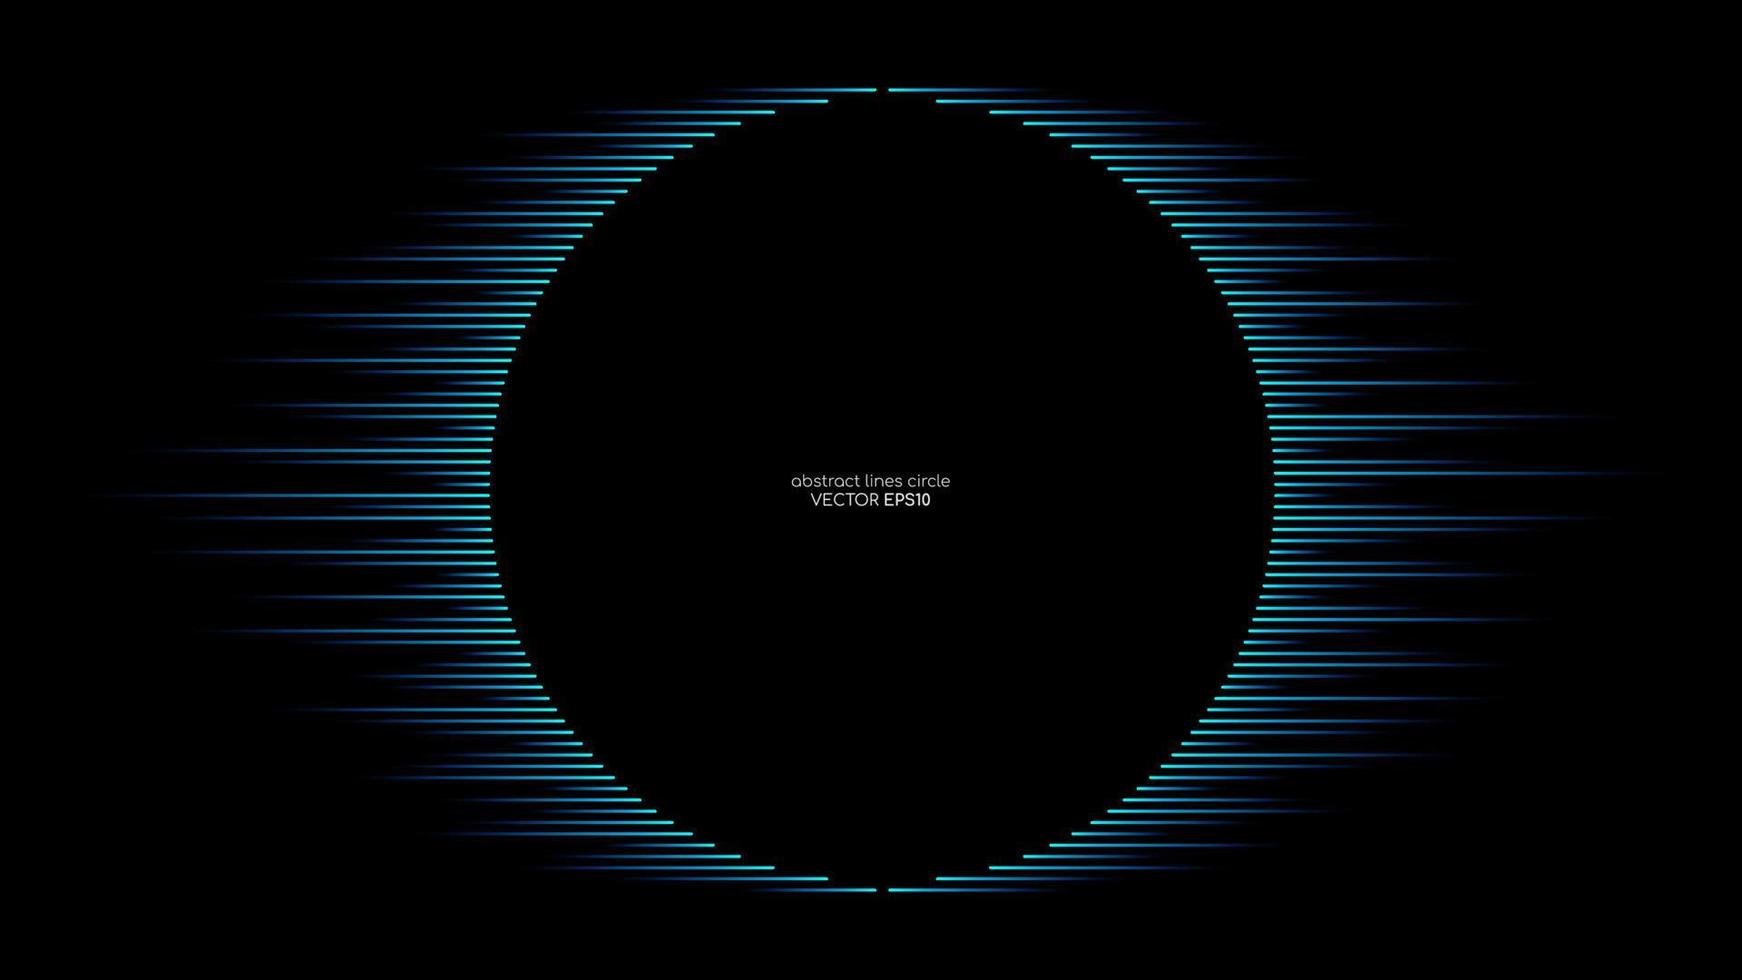 lignes abstraites vectorielles en cercle cadre de forme ronde par couleur bleue isolée sur fond noir dans la technologie de concept, la musique, la science, la modernité. vecteur